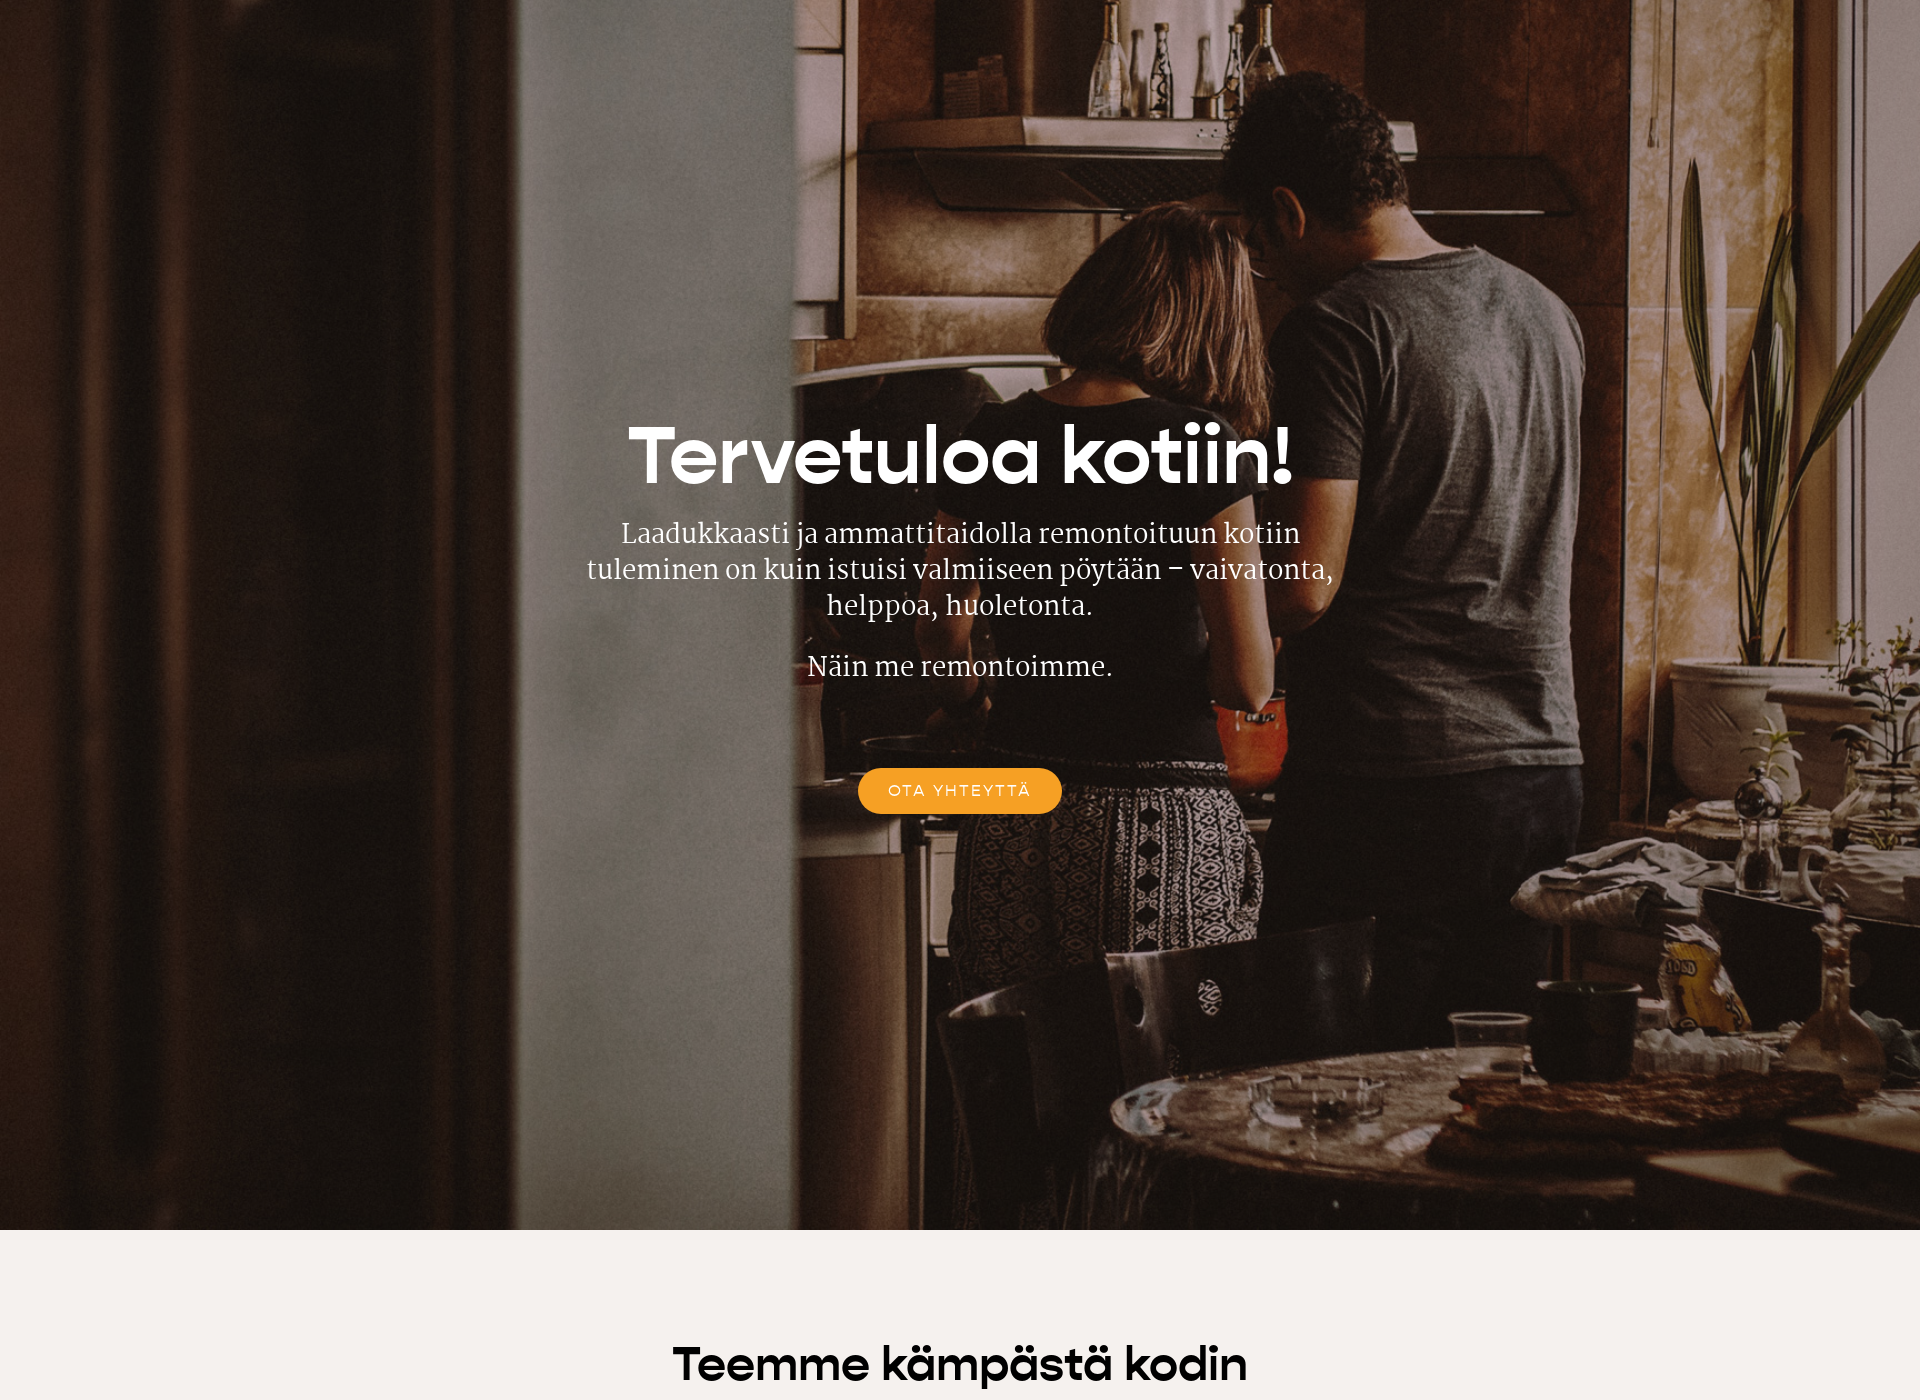 Screenshot for vakevasaneeraus.fi